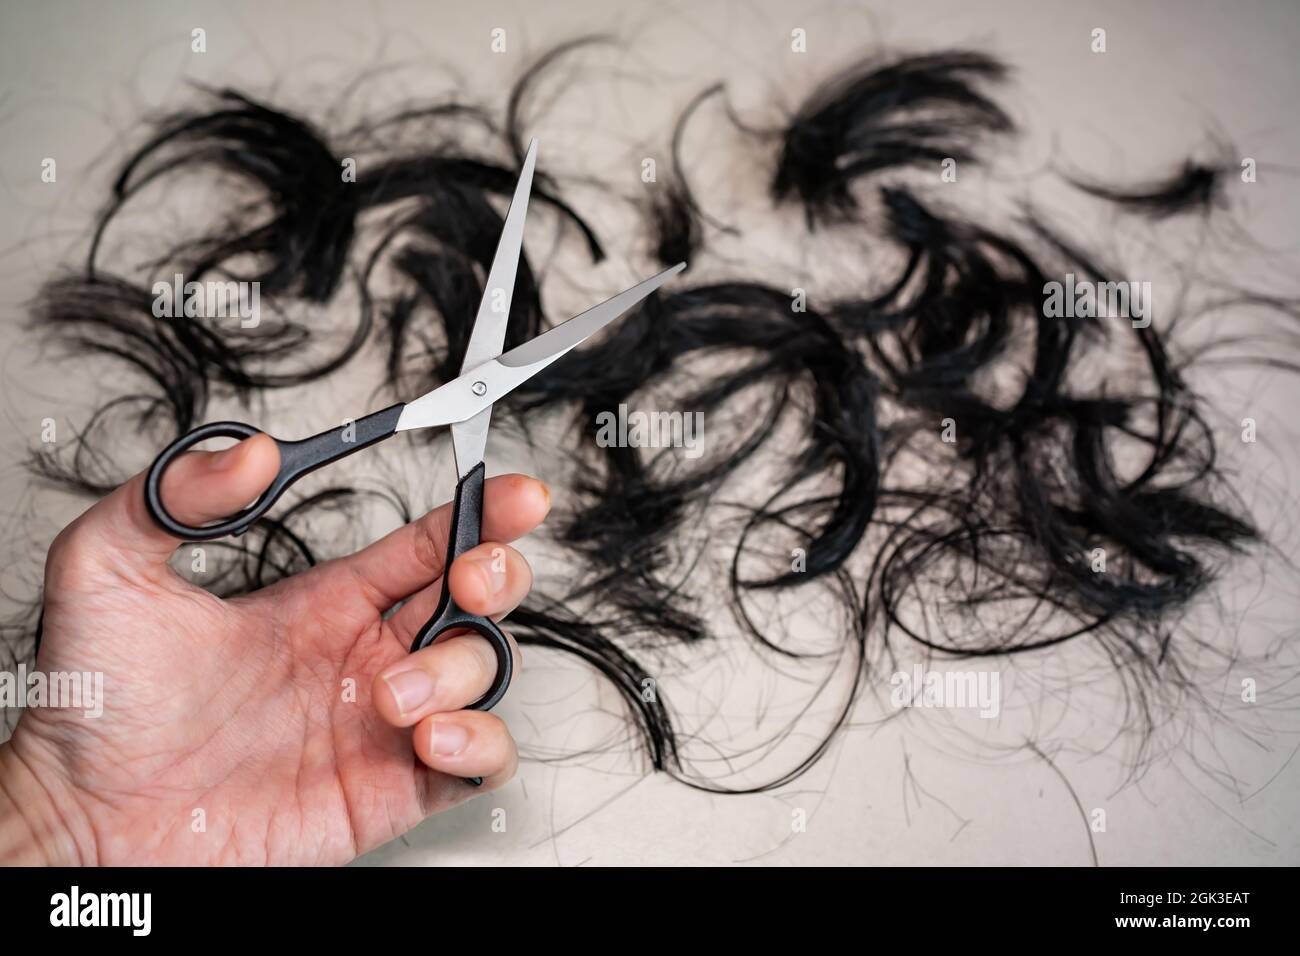 Forbici professionali per il taglio dei capelli nella mano sinistra con i capelli sul pavimento Foto Stock